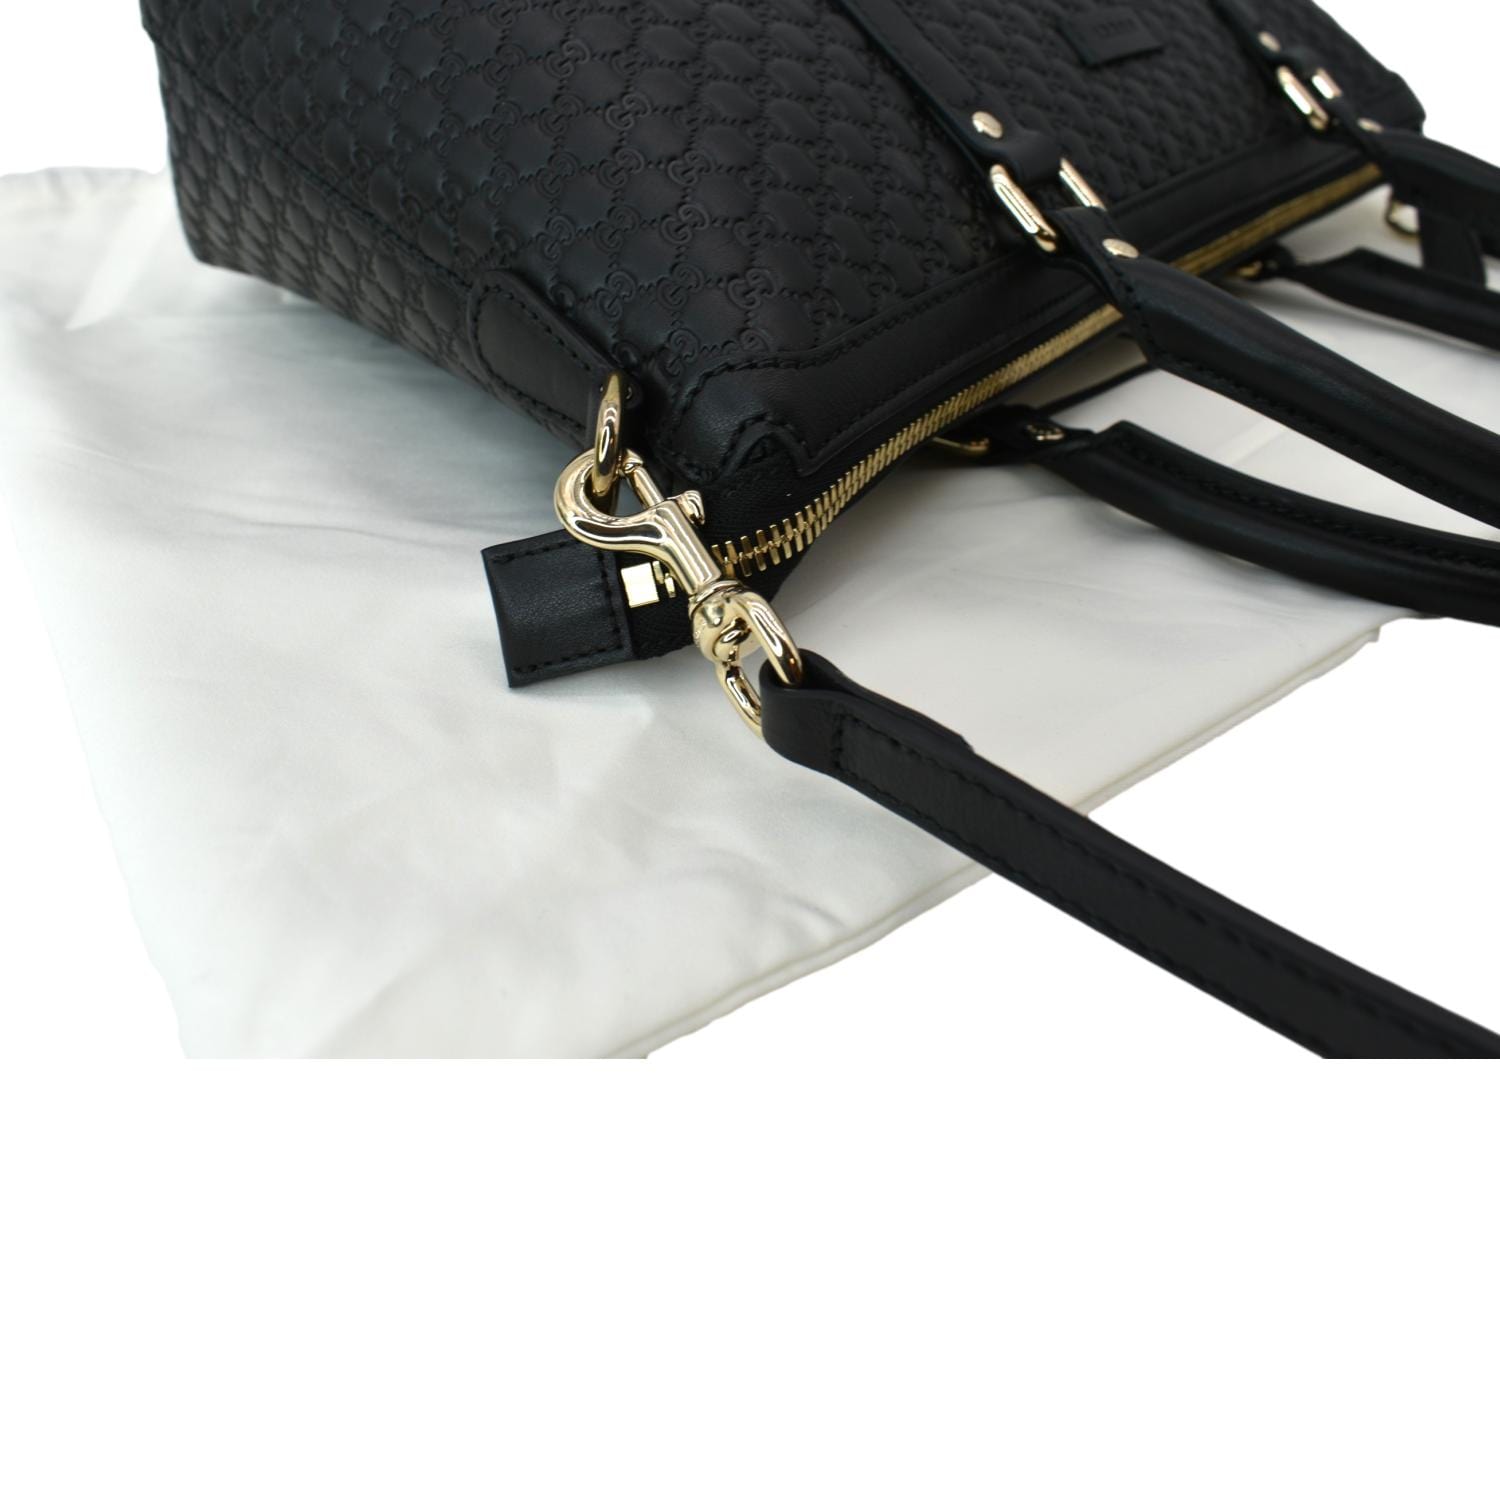 Gucci Micro Guccissima Leather Tote bag Black (Pre-Owned)